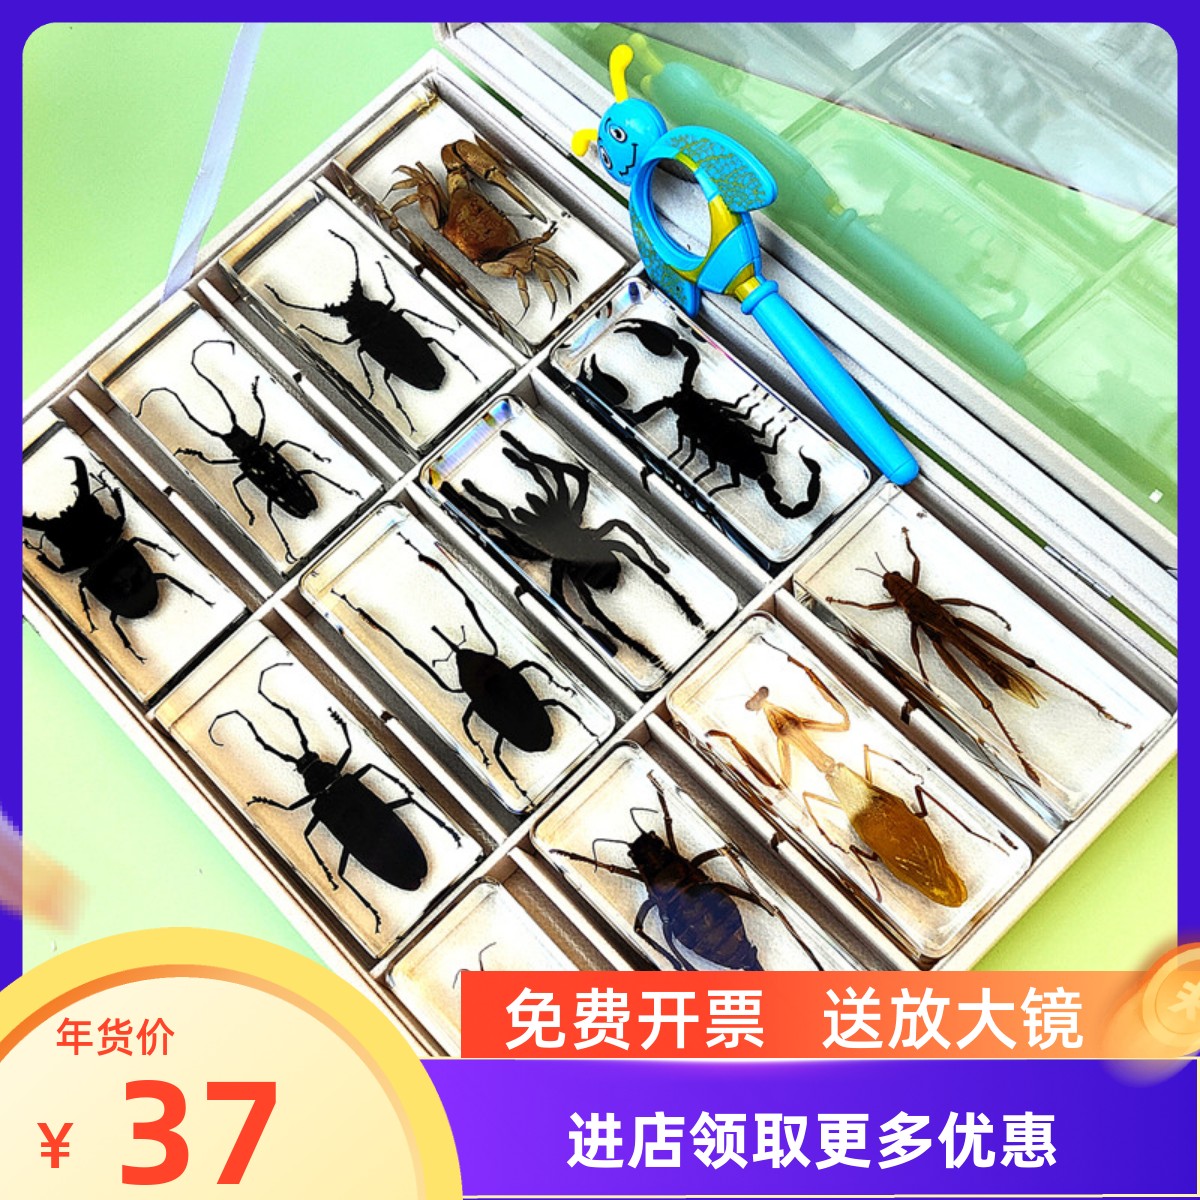 真实昆虫标本幼儿园动物琥珀树脂摆件甲虫蜈蚣蝎子蜘蛛螳螂星天牛